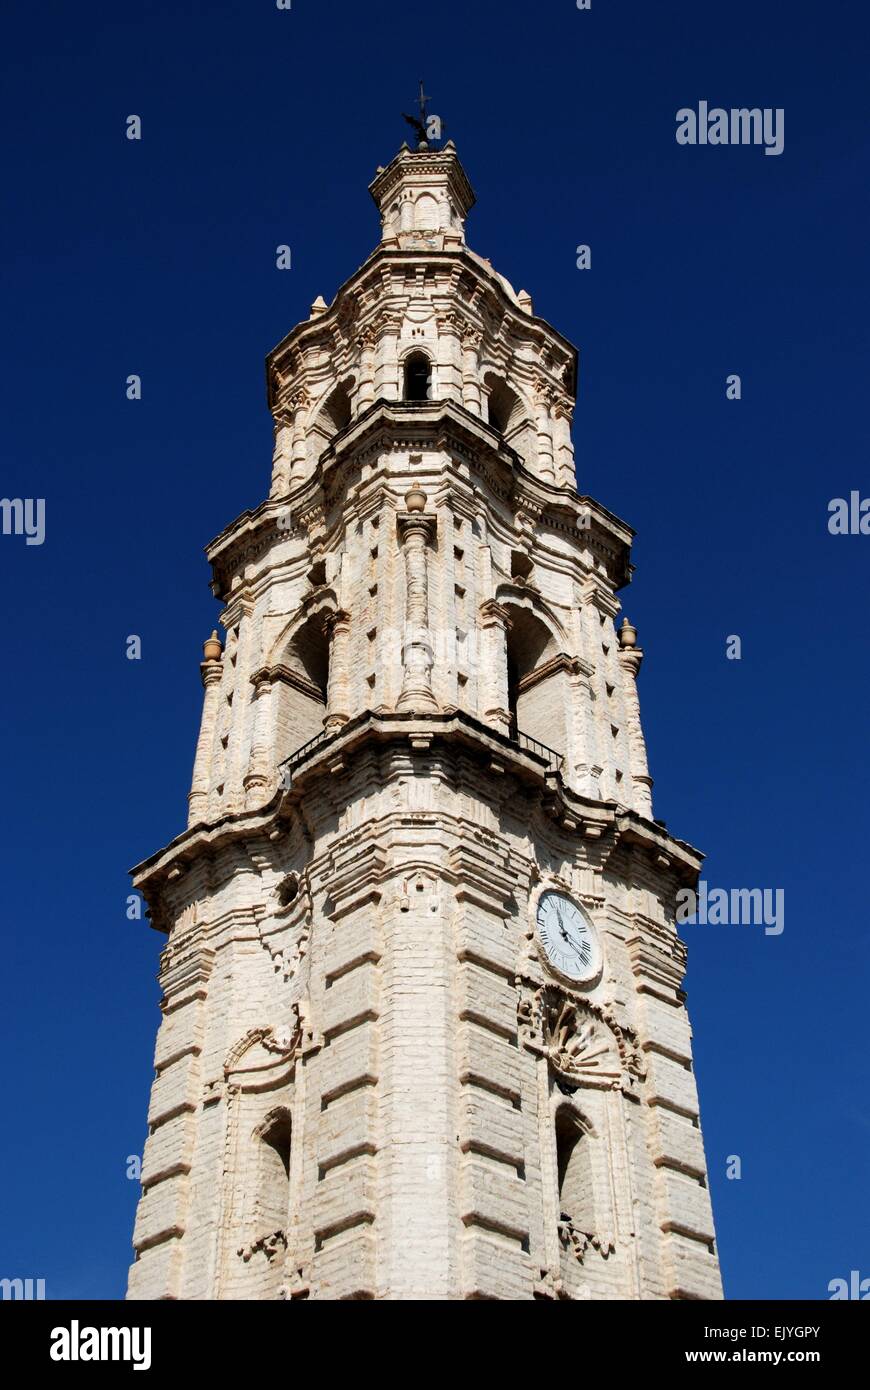 Baroque clock tower (Torre del Reloj), Aguilar de la Frontera, Cordoba Province, Andalusia, Spain, Western Europe. Stock Photo